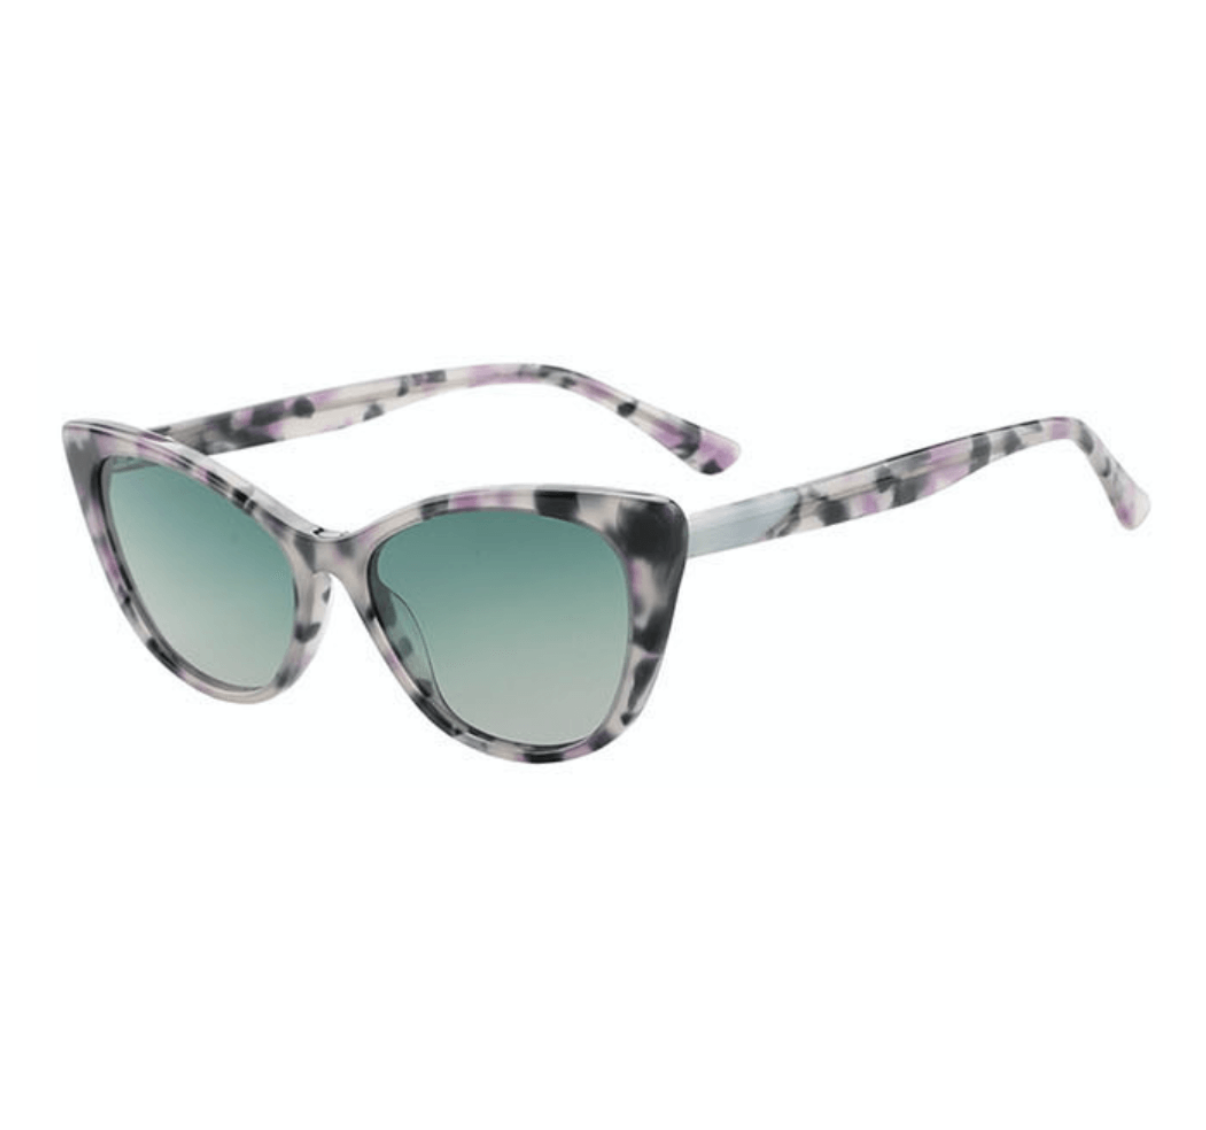 bulk cat eye glasses, wholesale cat eye sunglasses, sunglasses factory in China, wholesale sunglasses supplier